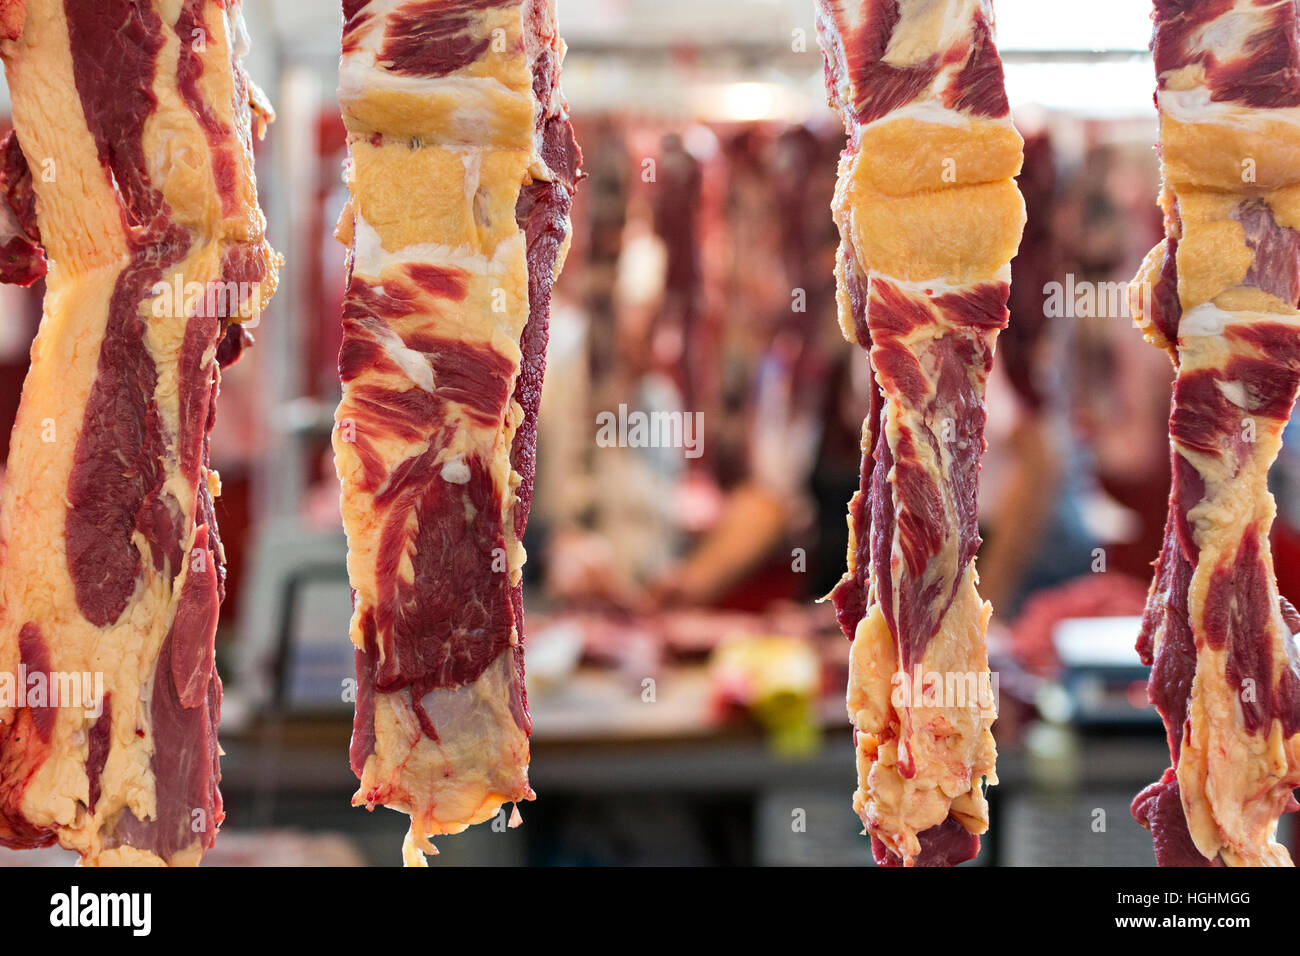 Viande suspendues dans le marché de la viande Banque D'Images